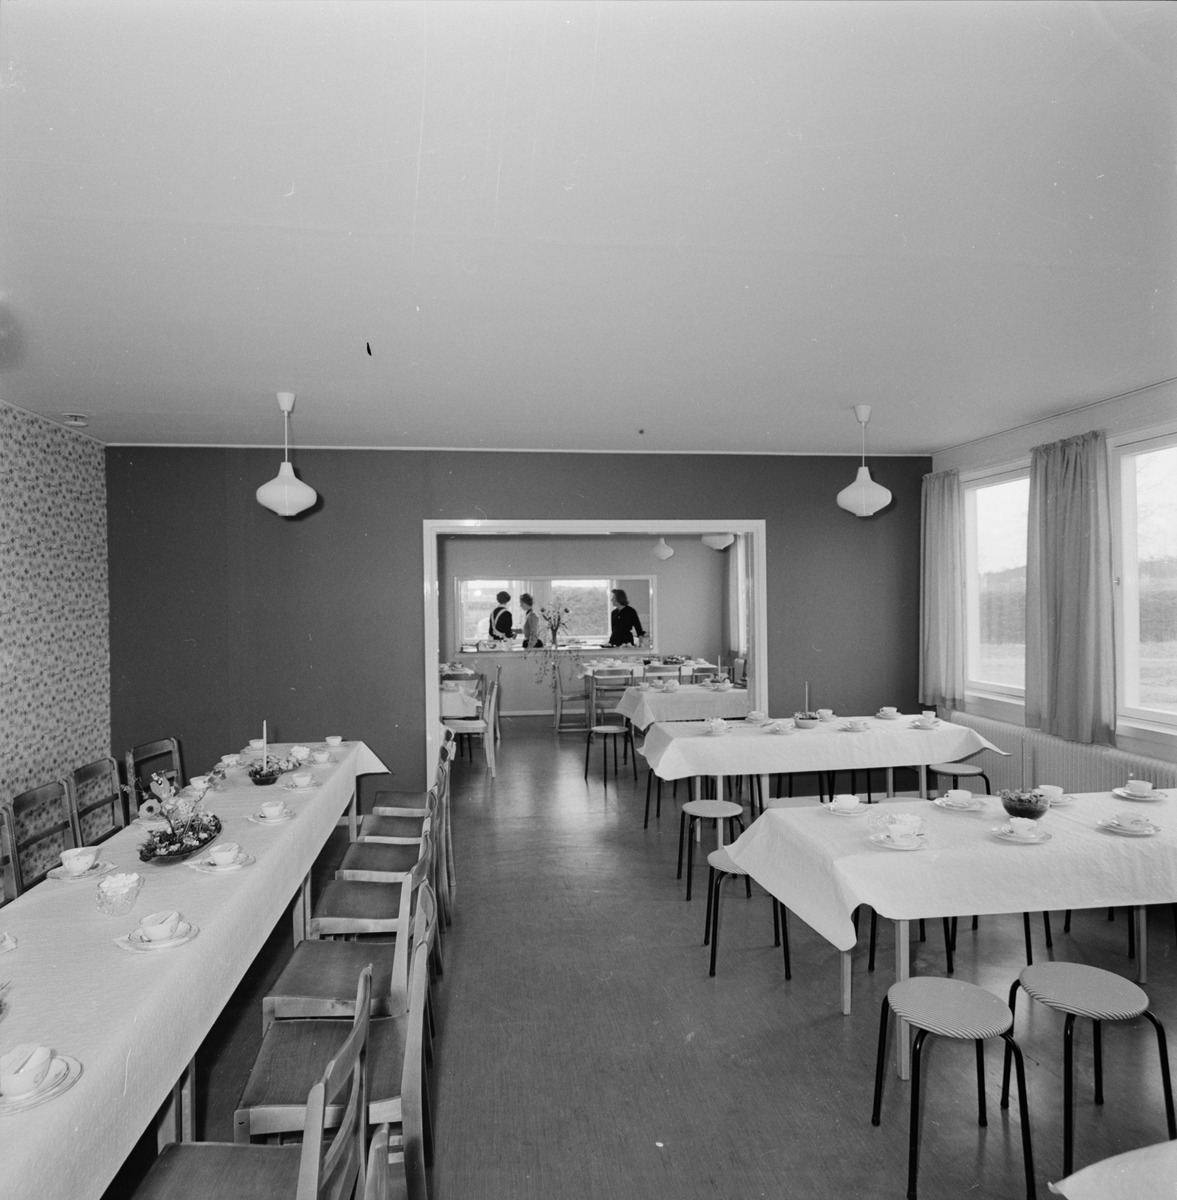 Dukade kaffebord vid återinvigningen av Jumkils skola